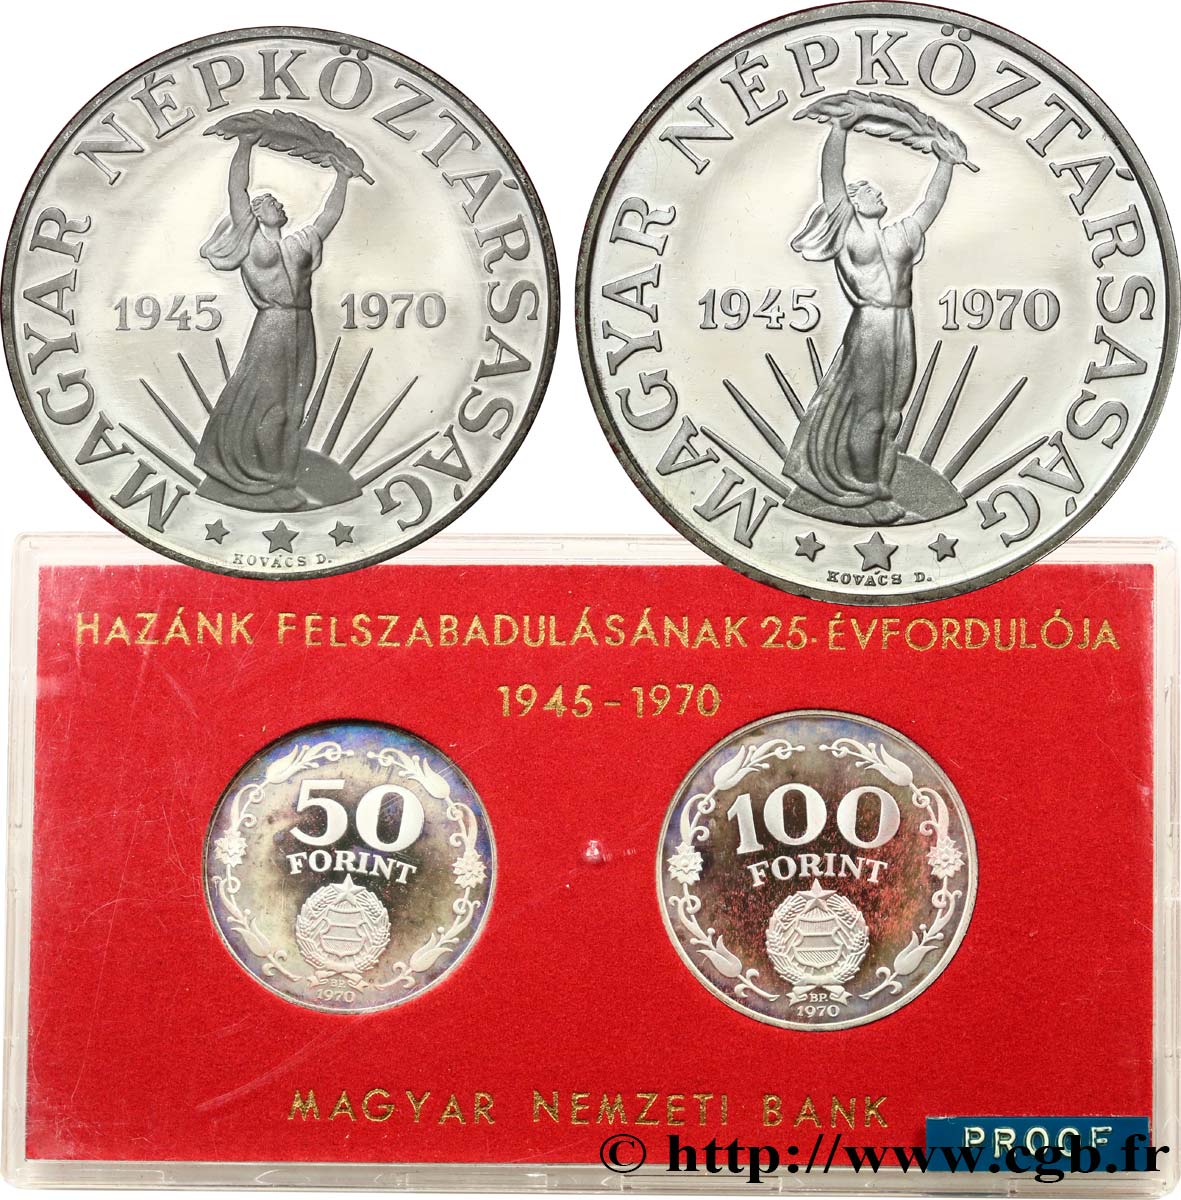 HONGRIE Série Proof - 2 monnaies - Forint 25e anniversaire de la Libération 1945-1970 1970 Budapest BE 